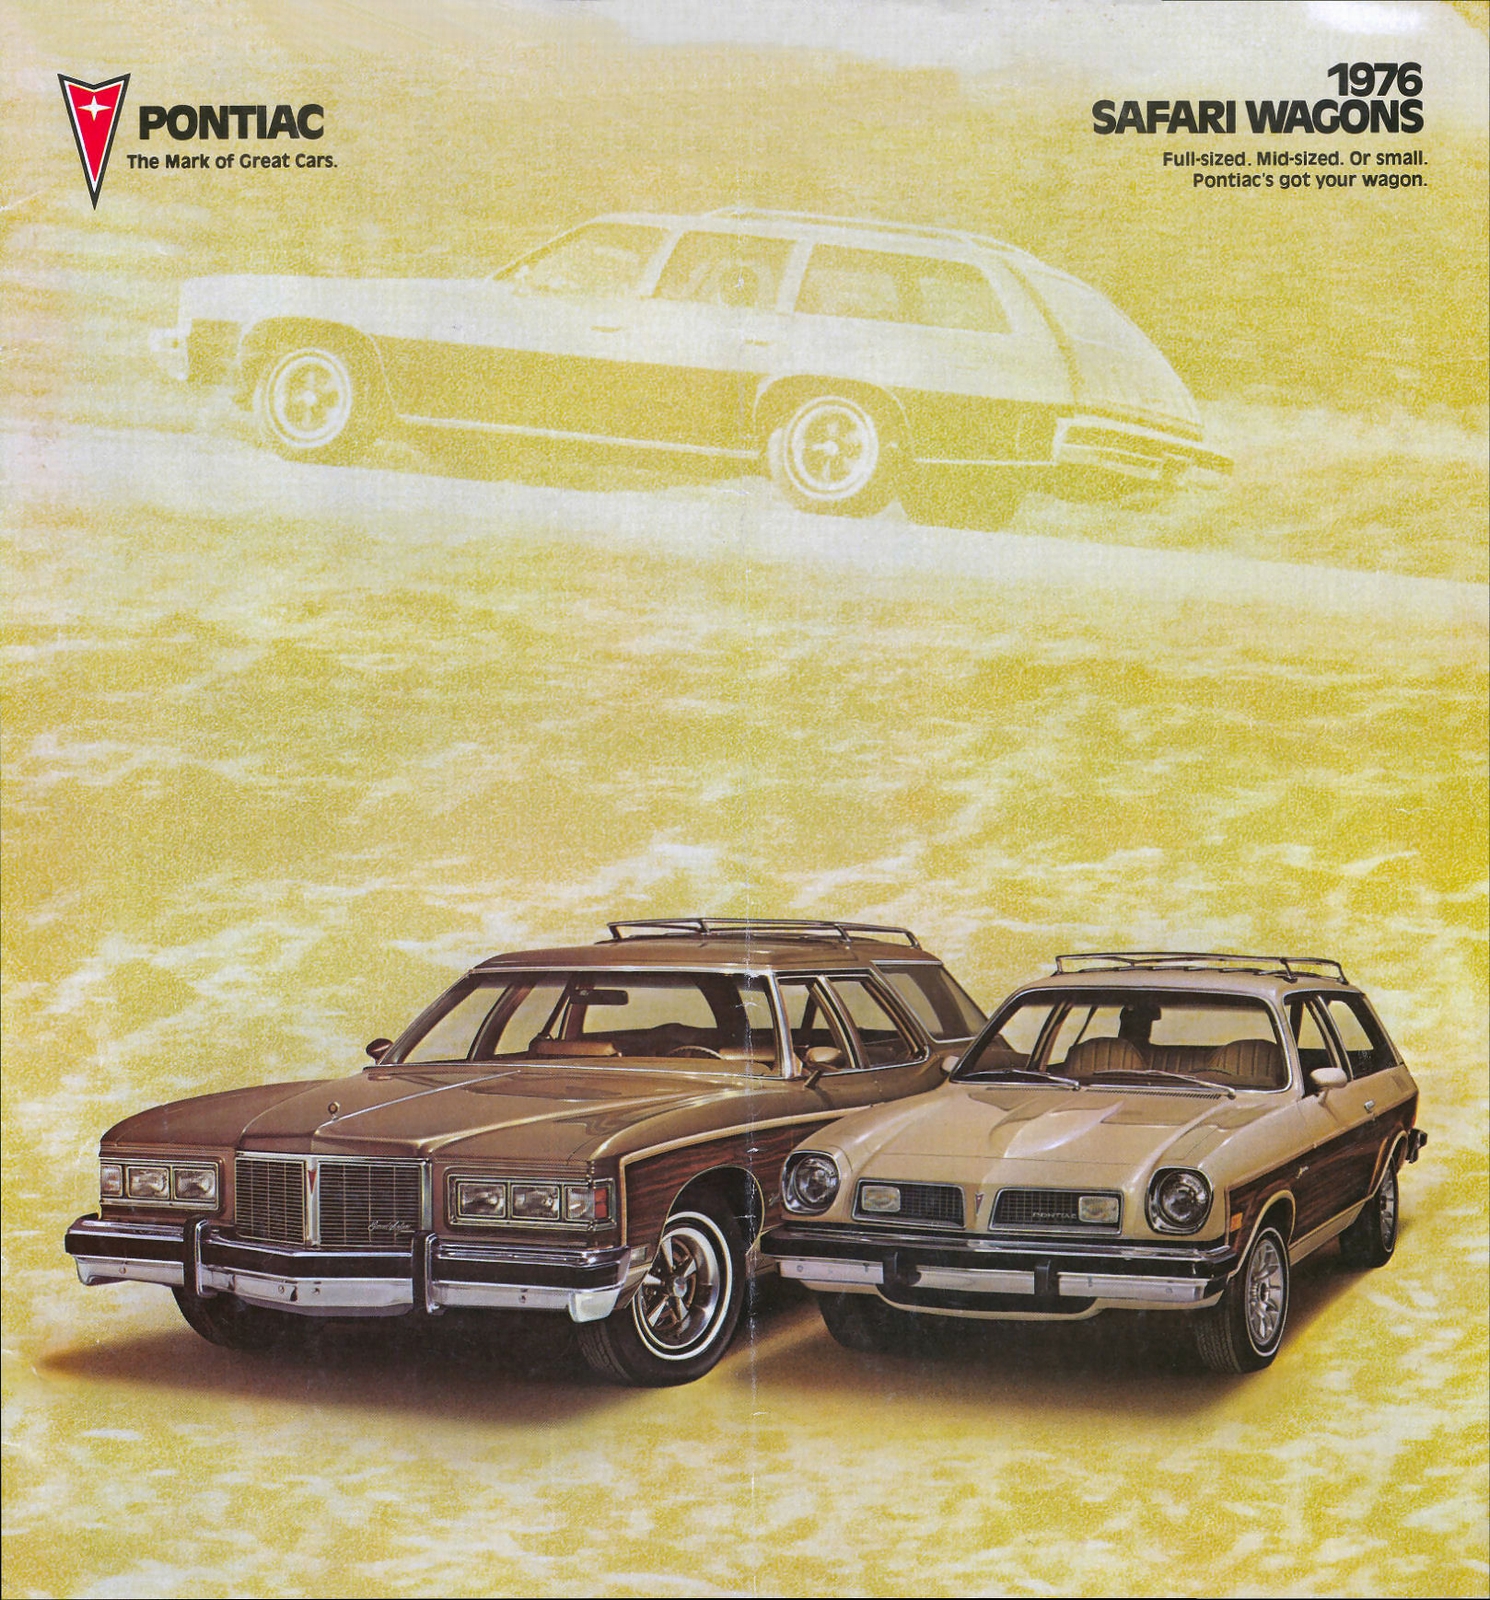 n_1976 Pontiac Wagons-01.jpg